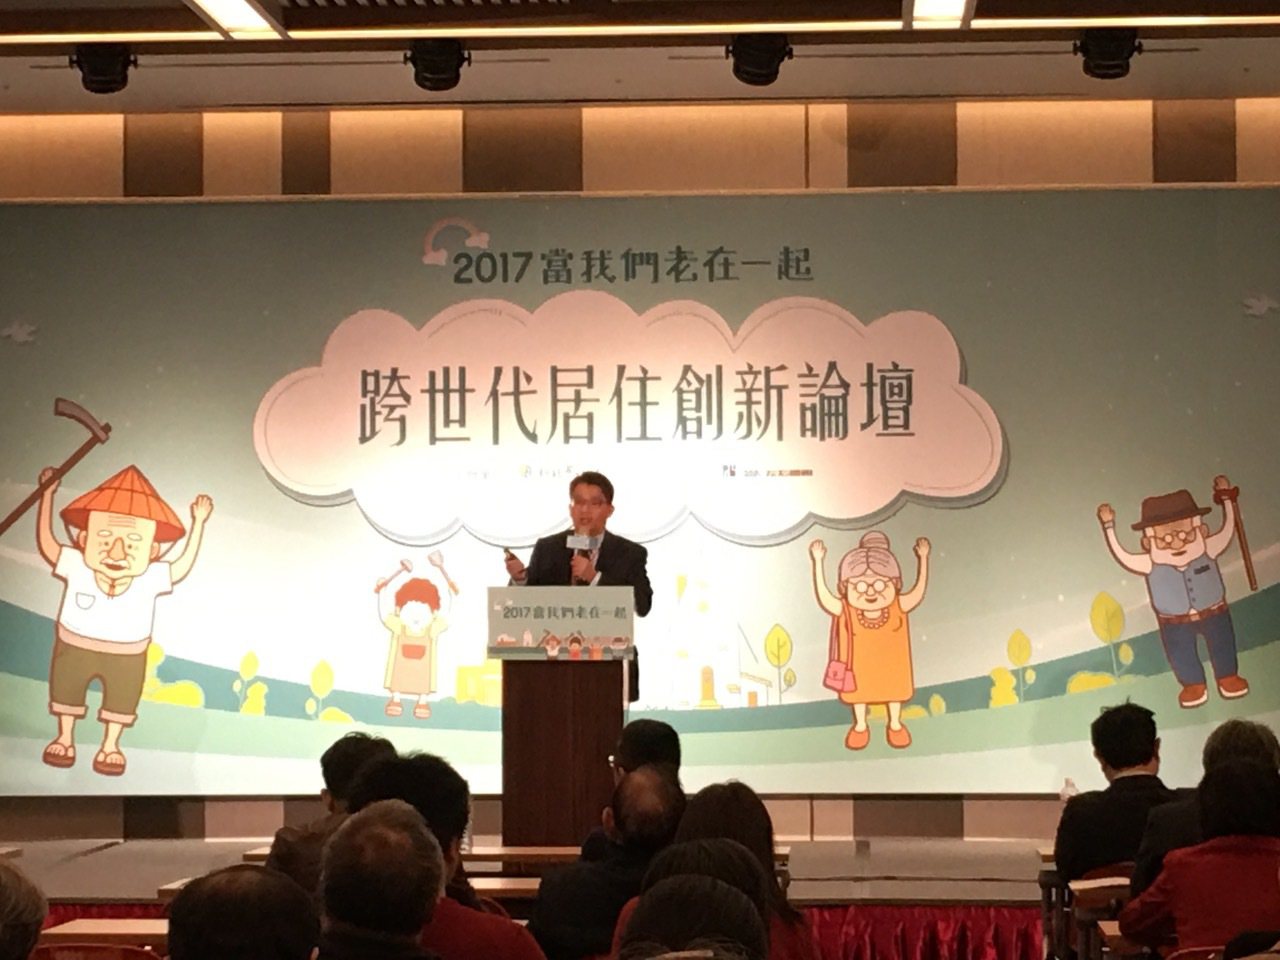 新北市政府副秘書長邱敬斌說明青銀共居的新作法。